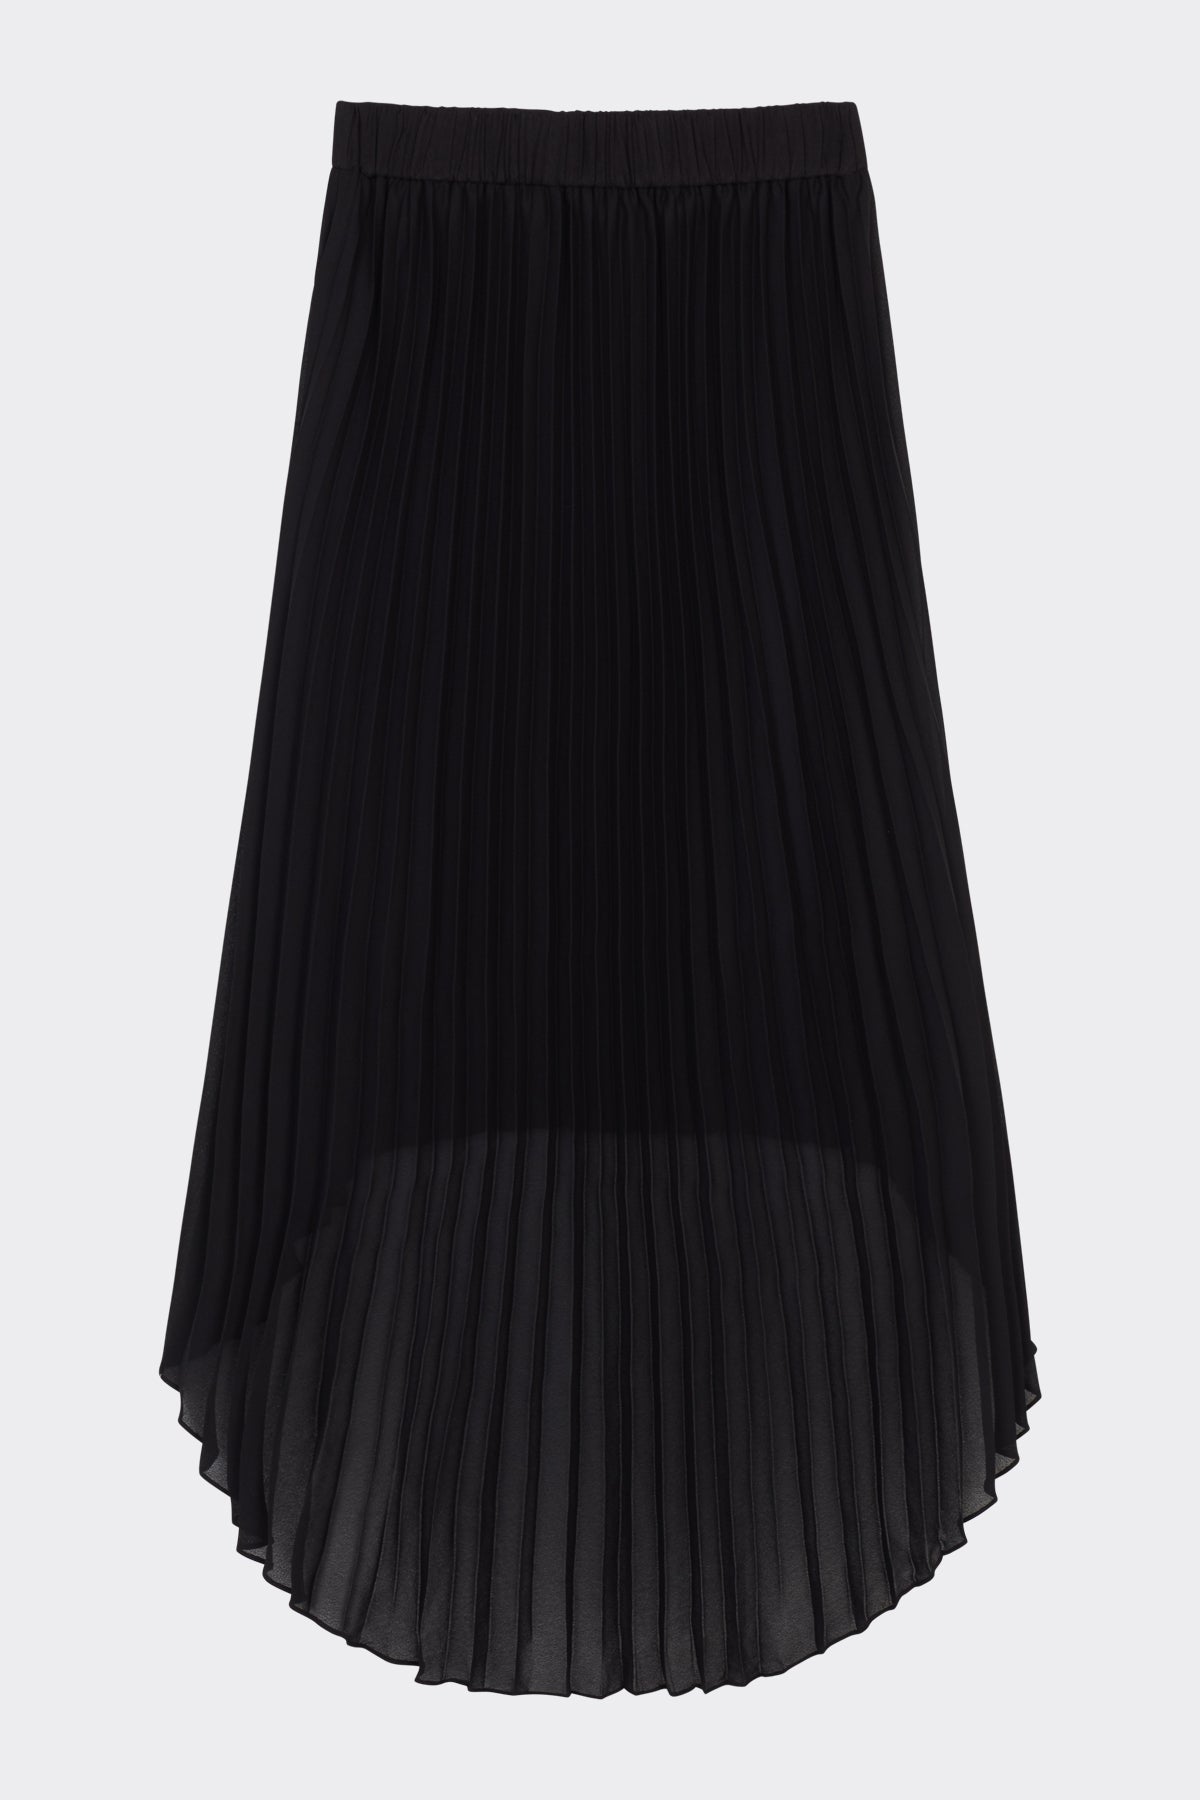 Coquette Skirt in Black | Noon By Noor